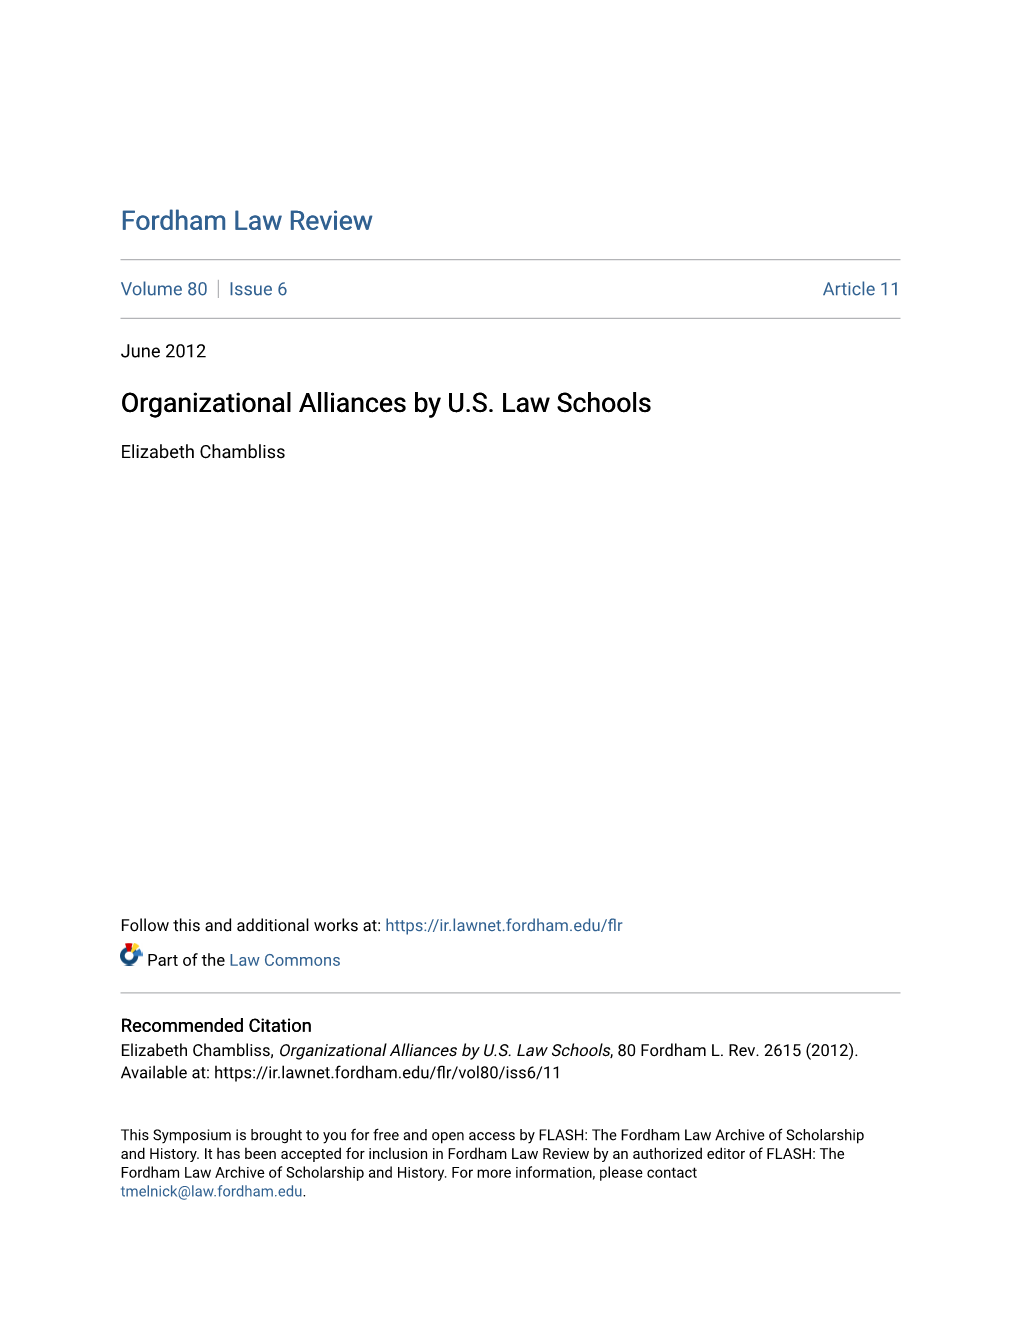 Organizational Alliances by U.S. Law Schools